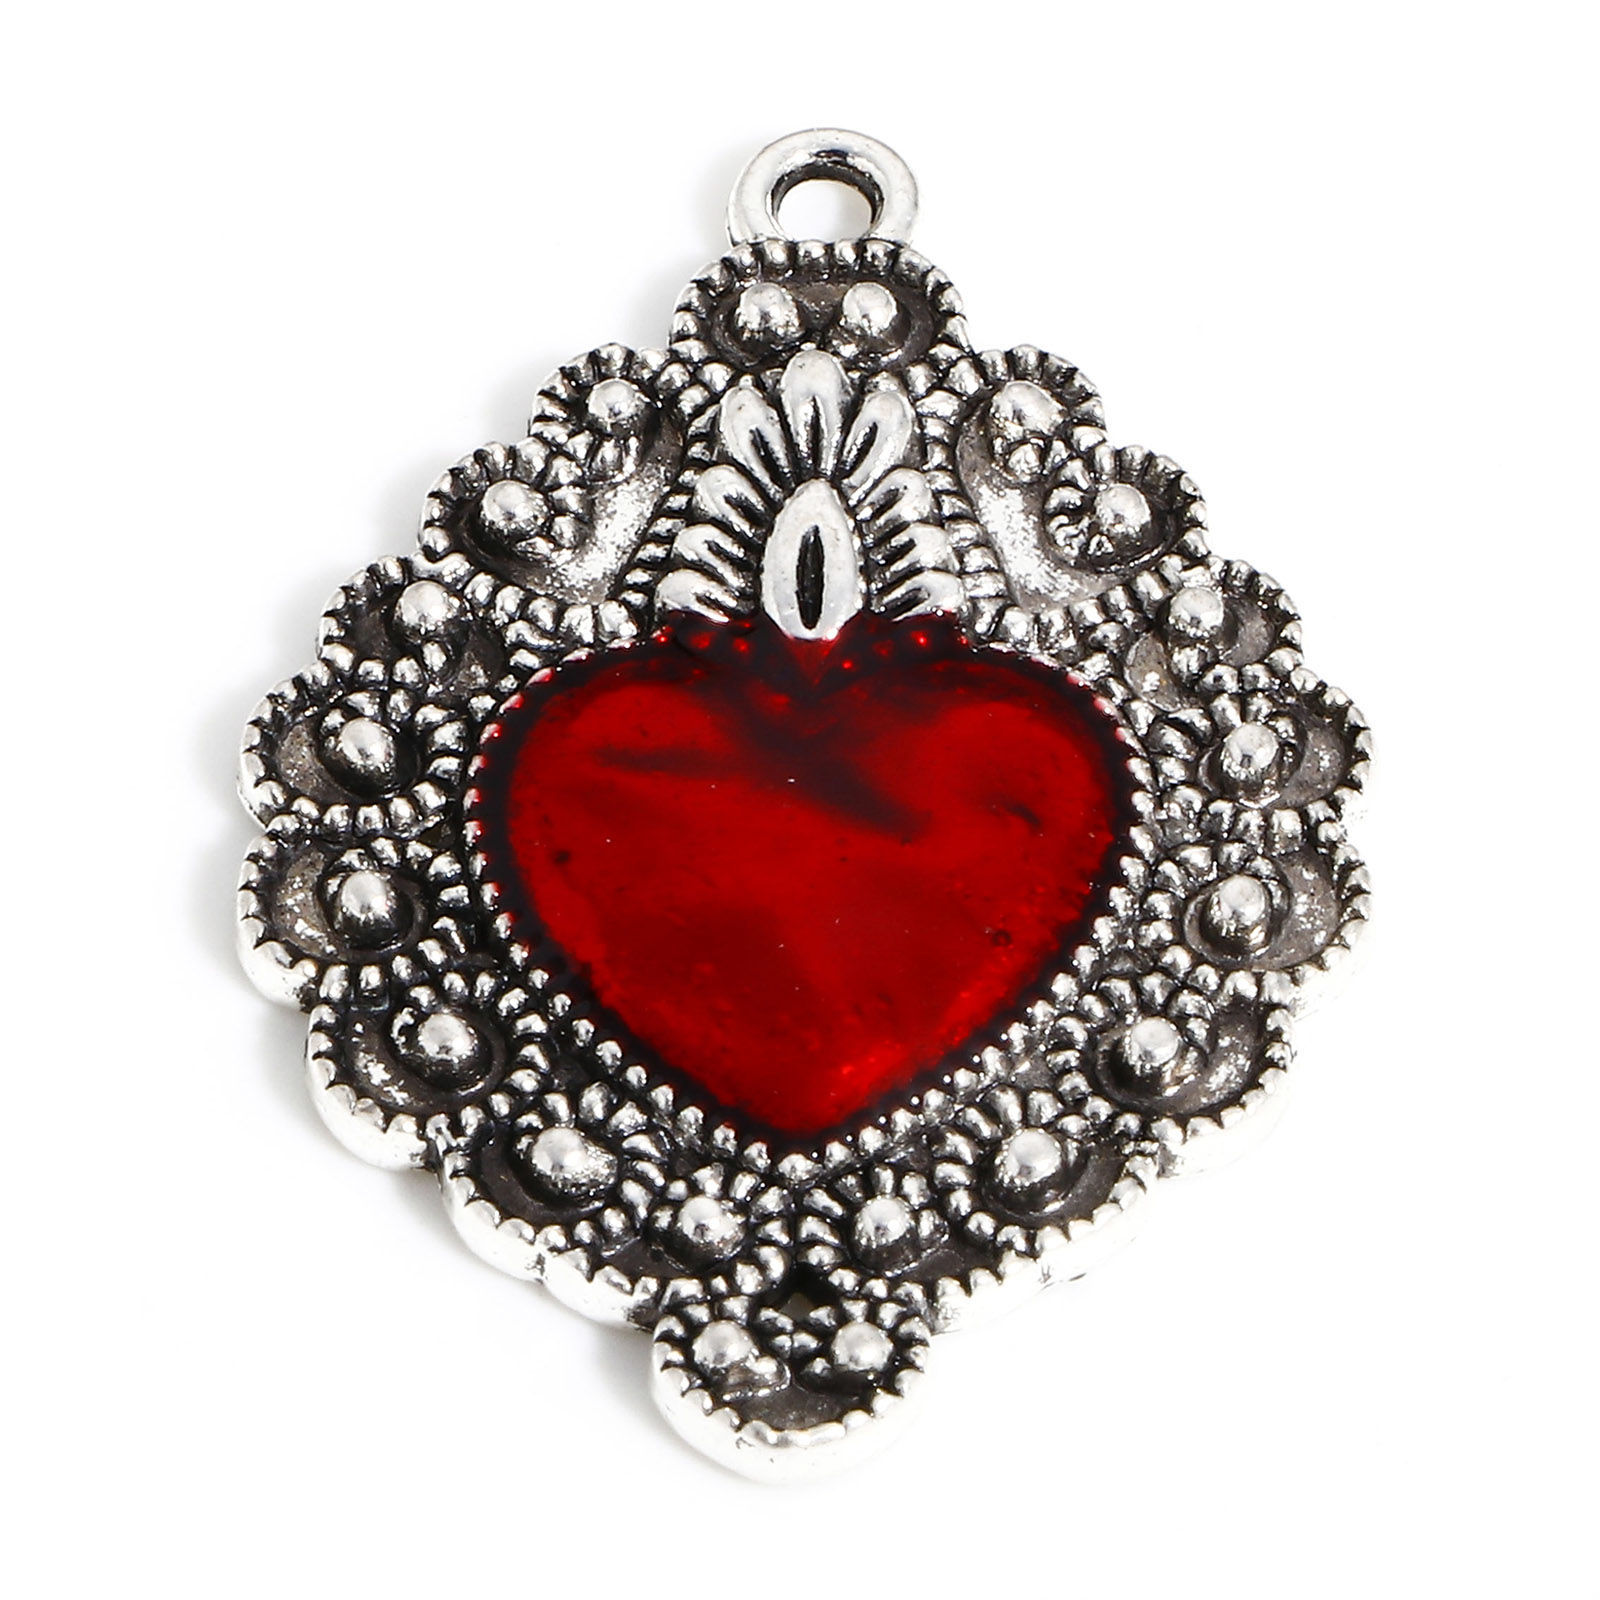 Picture of Zinc Based Alloy Religious Pendants Antique Silver Color Red Ex Voto Heart Enamel 3.5cm x 2.4cm, 5 PCs